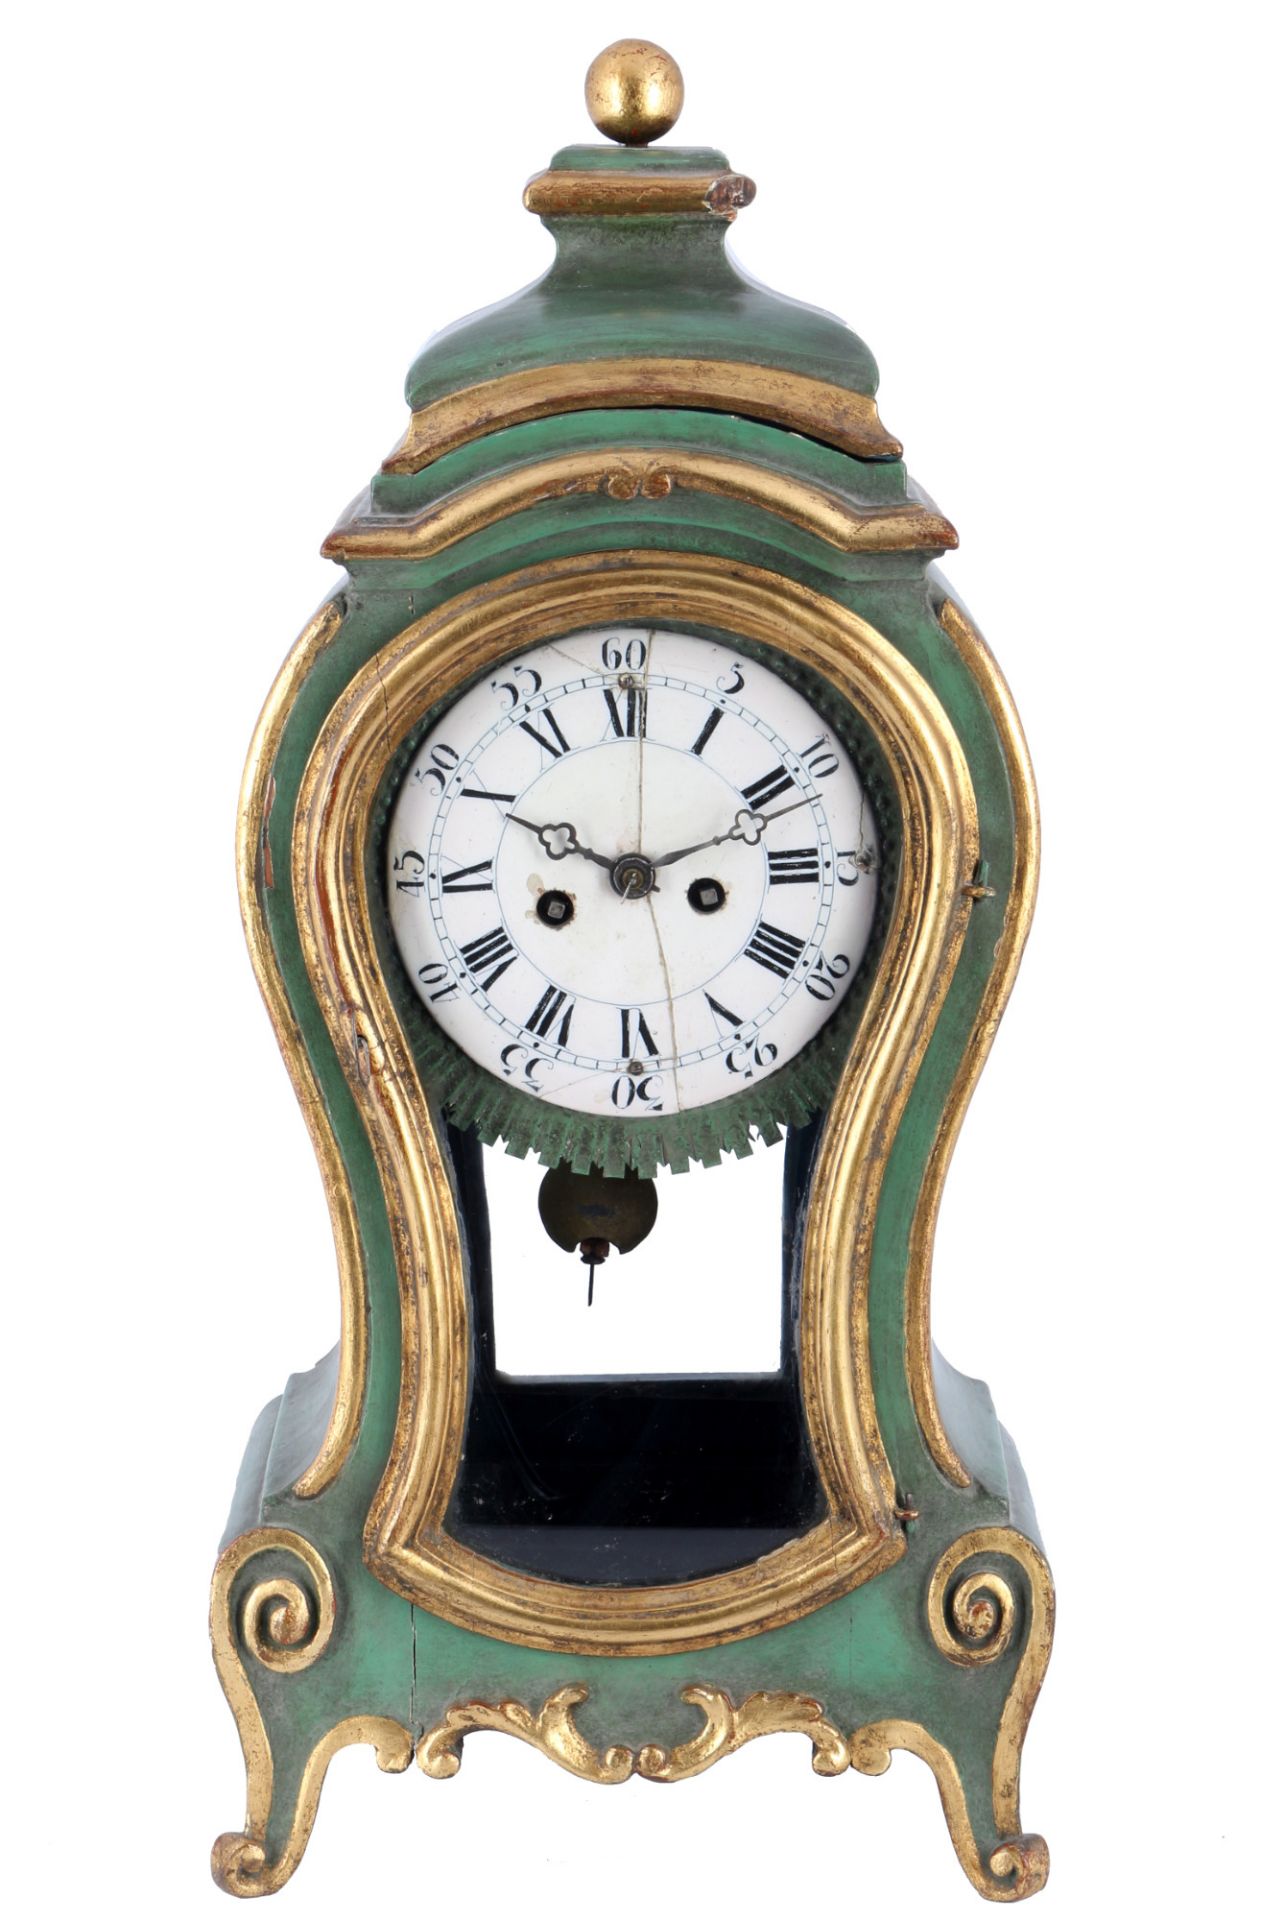 Neuenburger clock, 18th century,